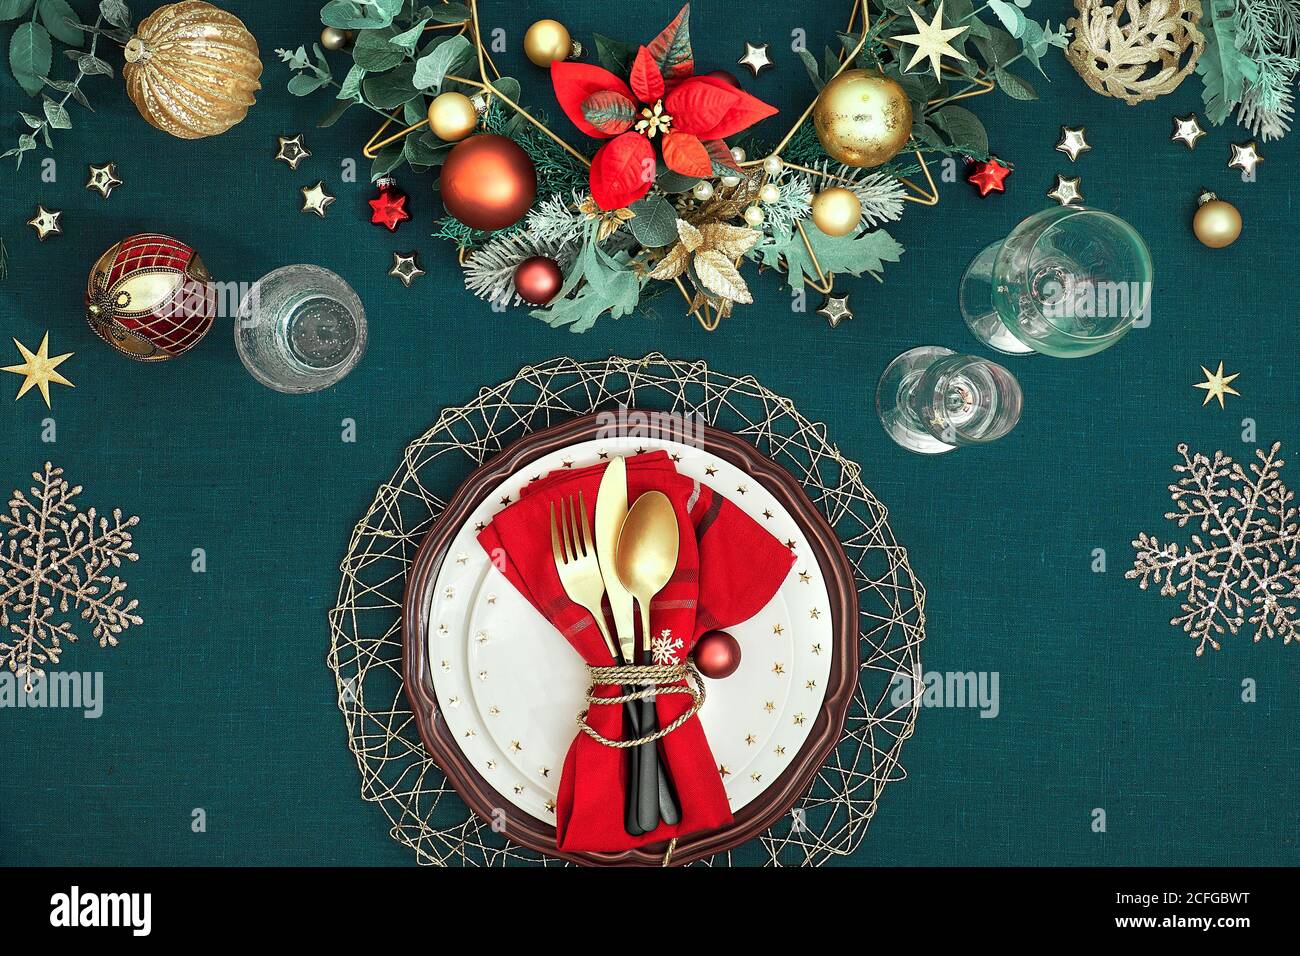 Tavolo natalizio con piatti bianchi, utensili dorati e decorazioni dorate di colore rosso scuro. Disposizione piatta, vista dall'alto su sfondo in tessuto di lino blu scuro. Foto Stock